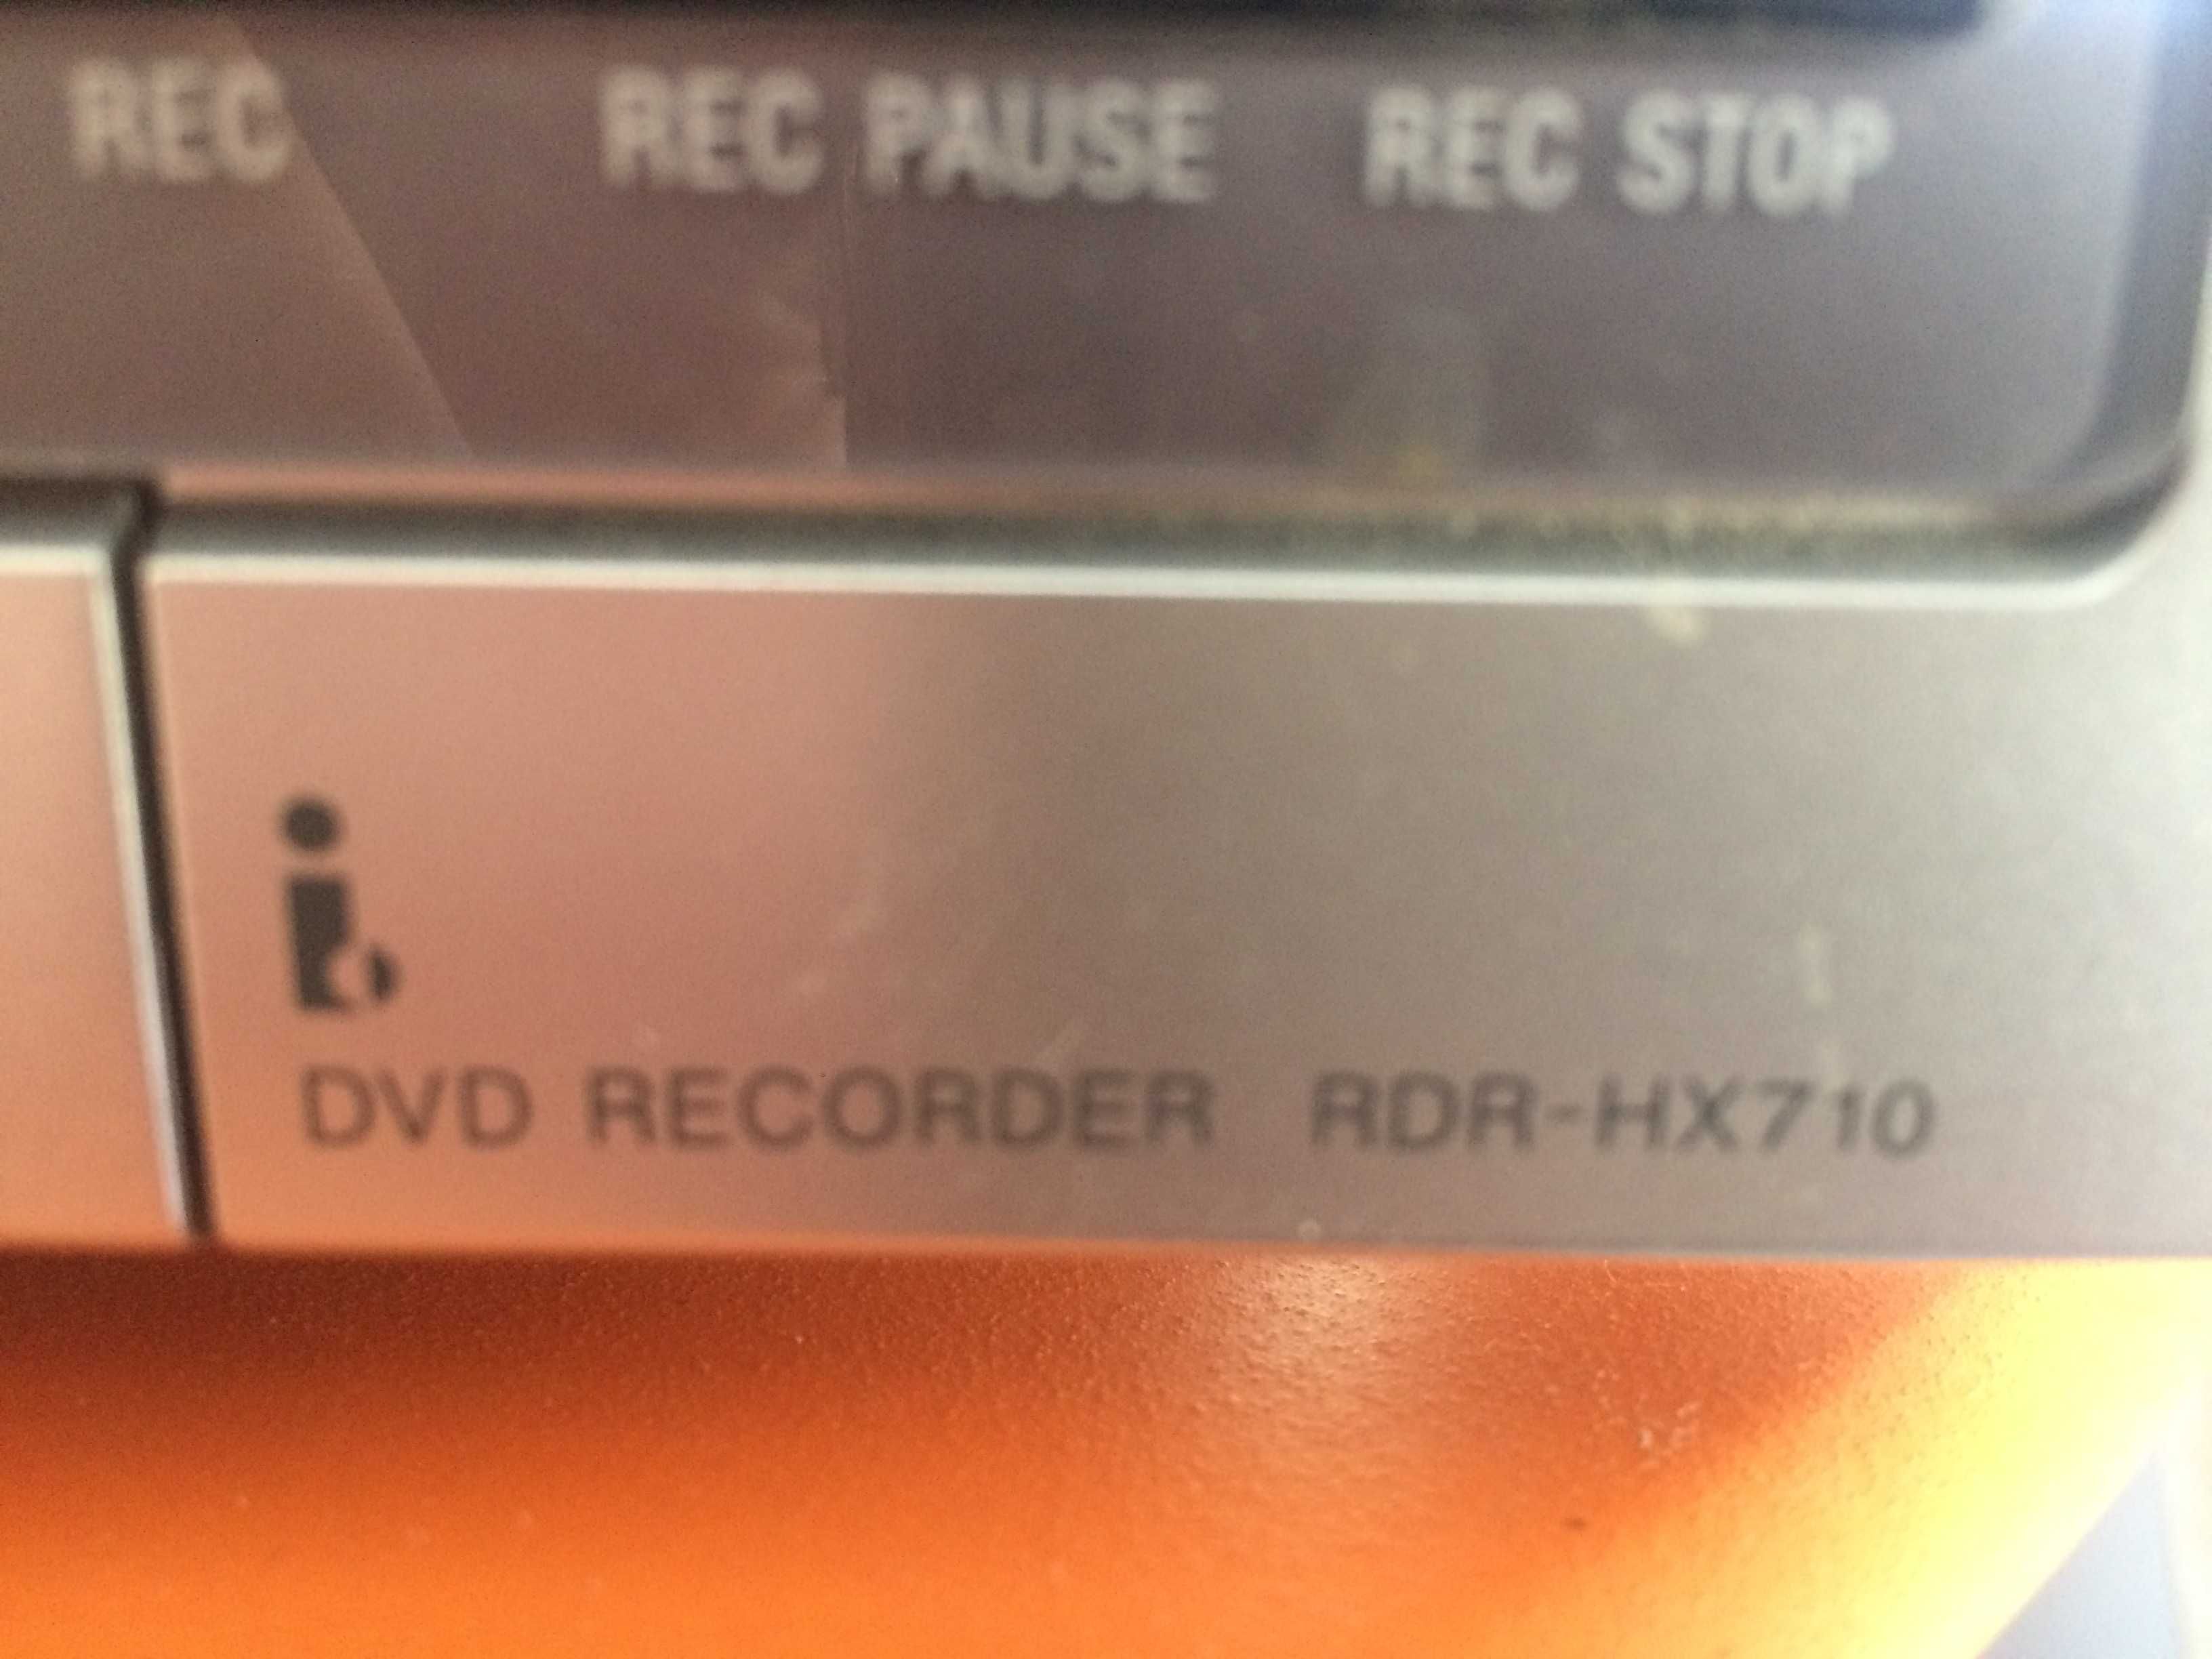 Gravador de DVDs Sony com disco duro  160GB